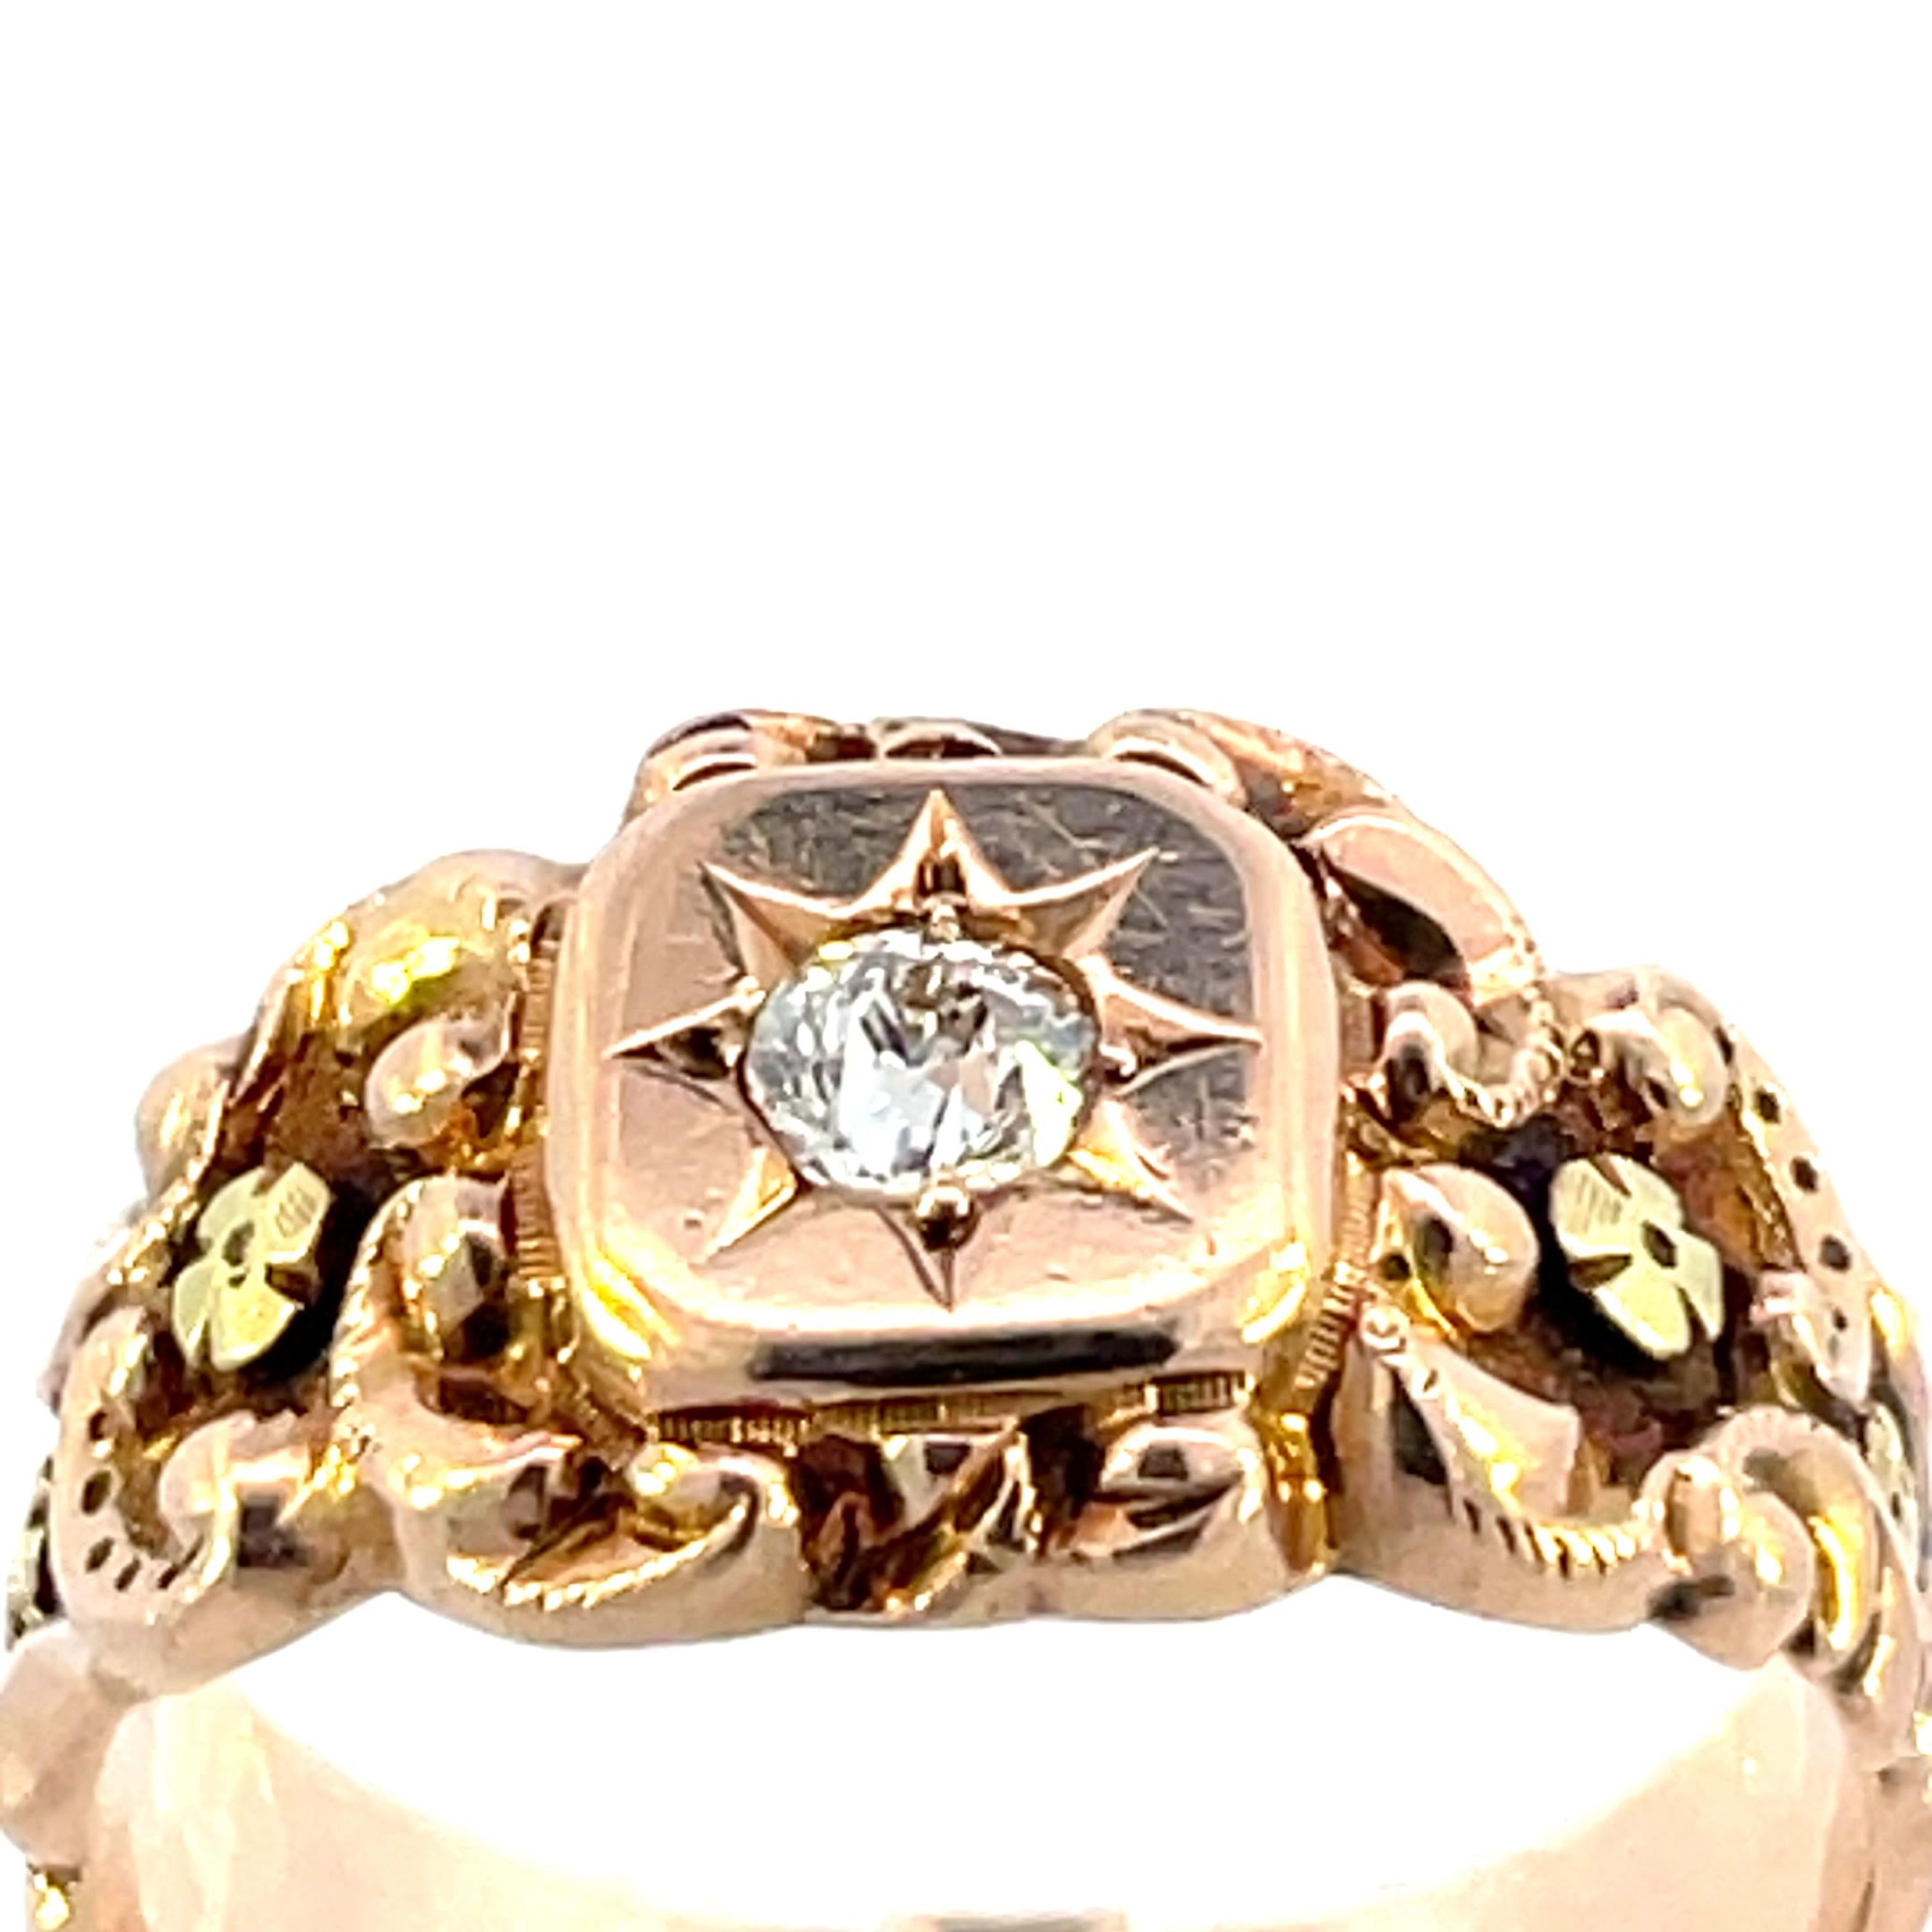 Eine prächtige 1880 14K Rose Gold viktorianischen Ring & Applied Green Gold Florets mit einem schön geschliffenen europäischen Diamanten, die anders als alle anderen ist. In der Mitte des Rings befindet sich ein vs2 in Klarheit H Farbe European Cut